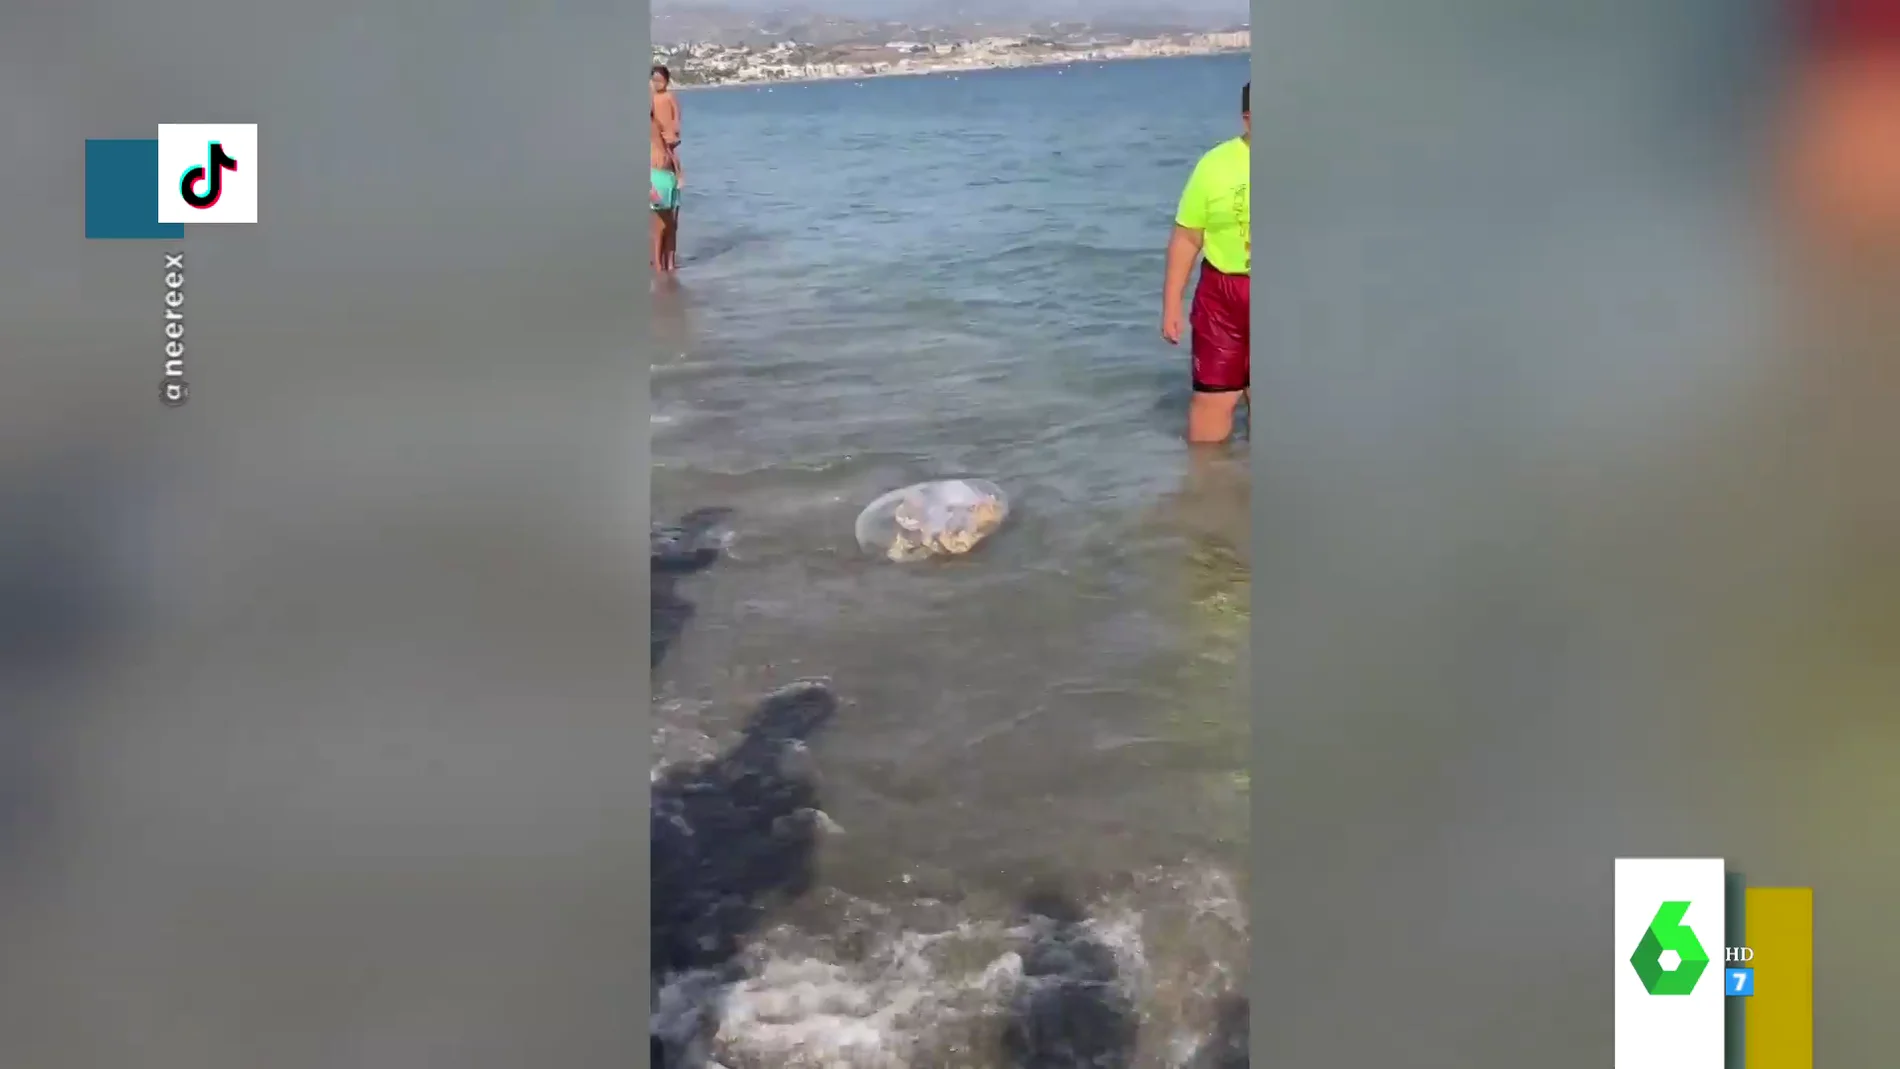 El impactante vídeo en el que intentan capturar una medusa gigante en una playa de Málaga